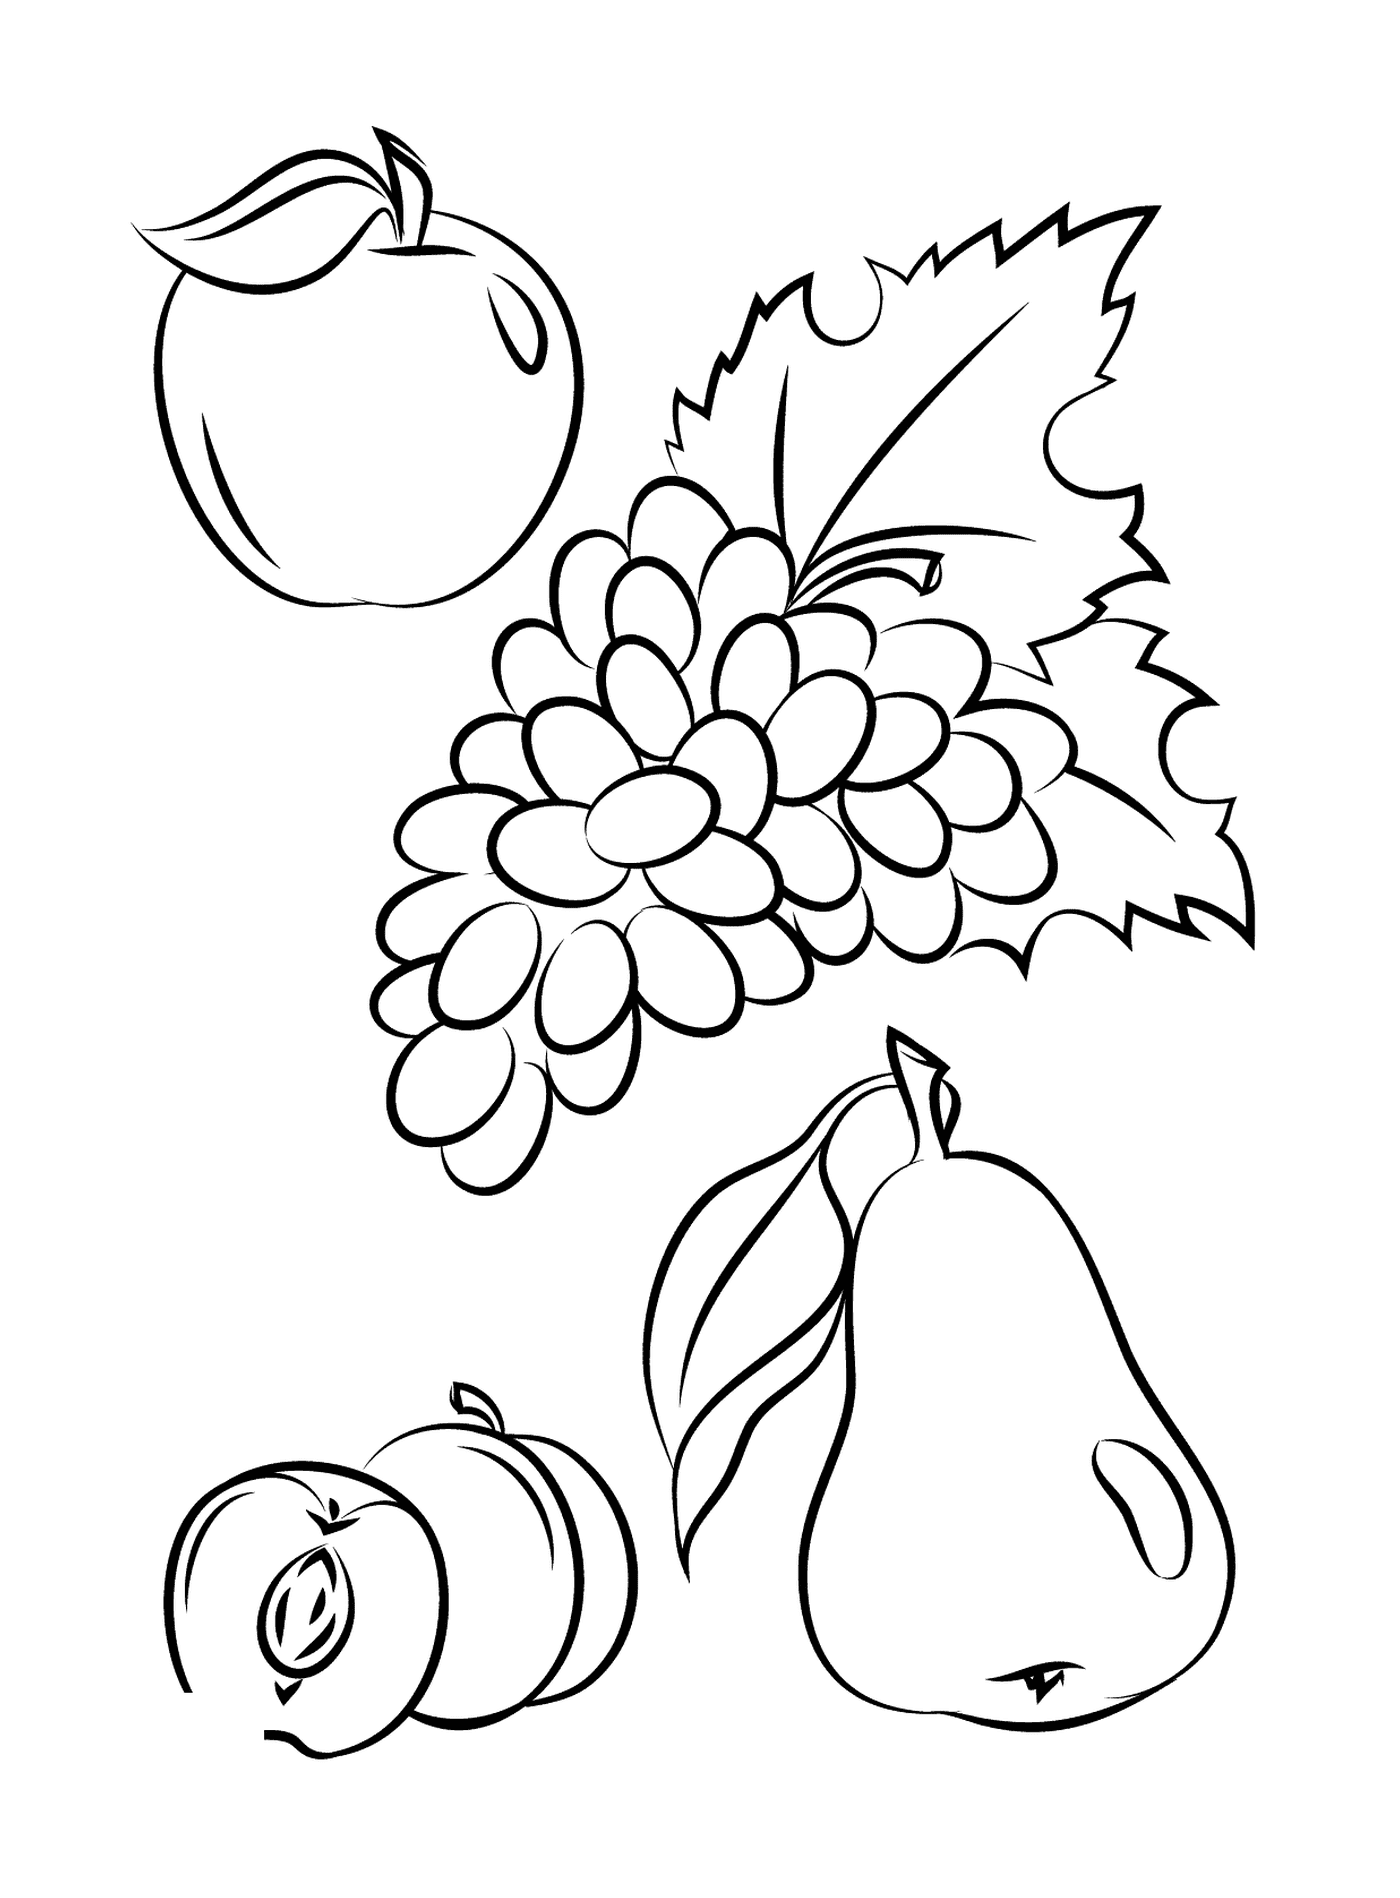  Una manzana, una pera, uvas y un melocotón 